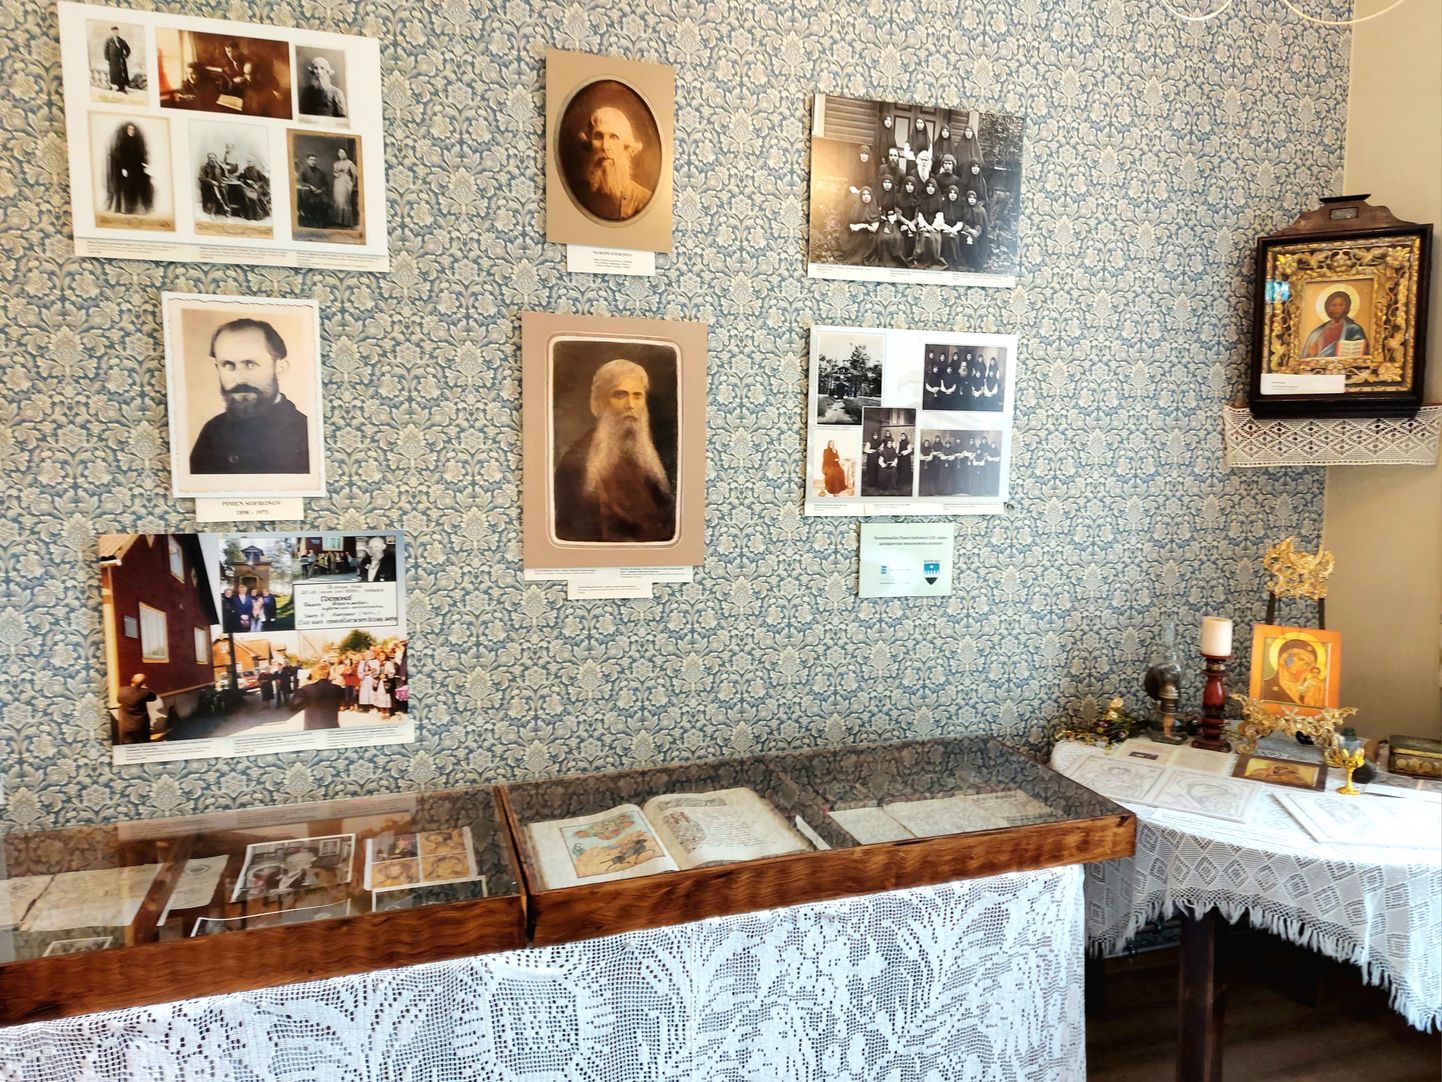 Tiheda külas tegutsevas Peipsimaa muuseumis on seatud tähelepanu keskmesse Pimen Sofronovi elu ja tegevus. Tema foto on seinal keskmises reas vasakult esimene.